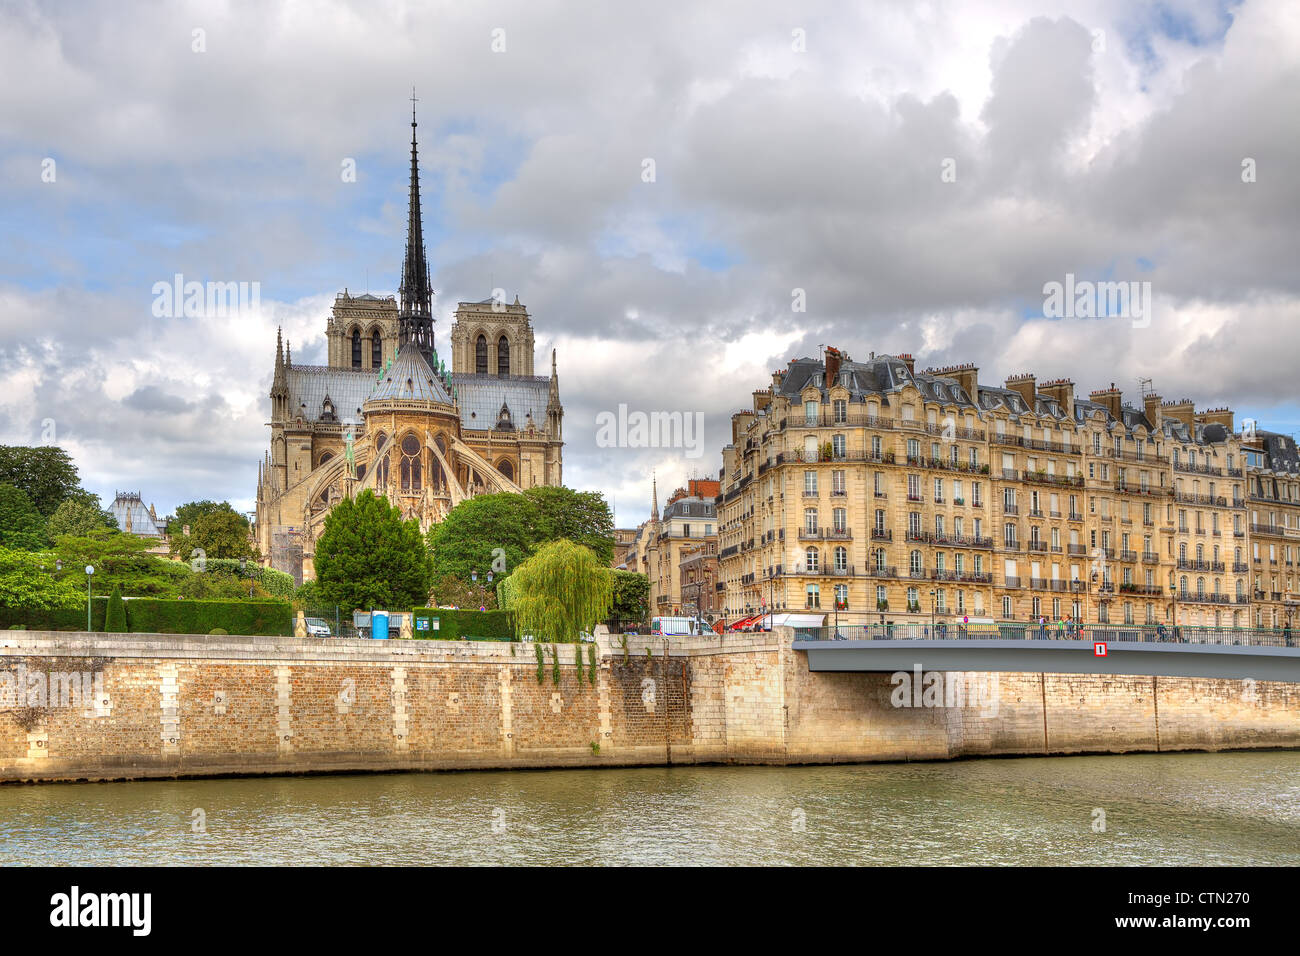 Vue sur immeuble parisien traditionnel et Nore Dame de Paris, France. Banque D'Images